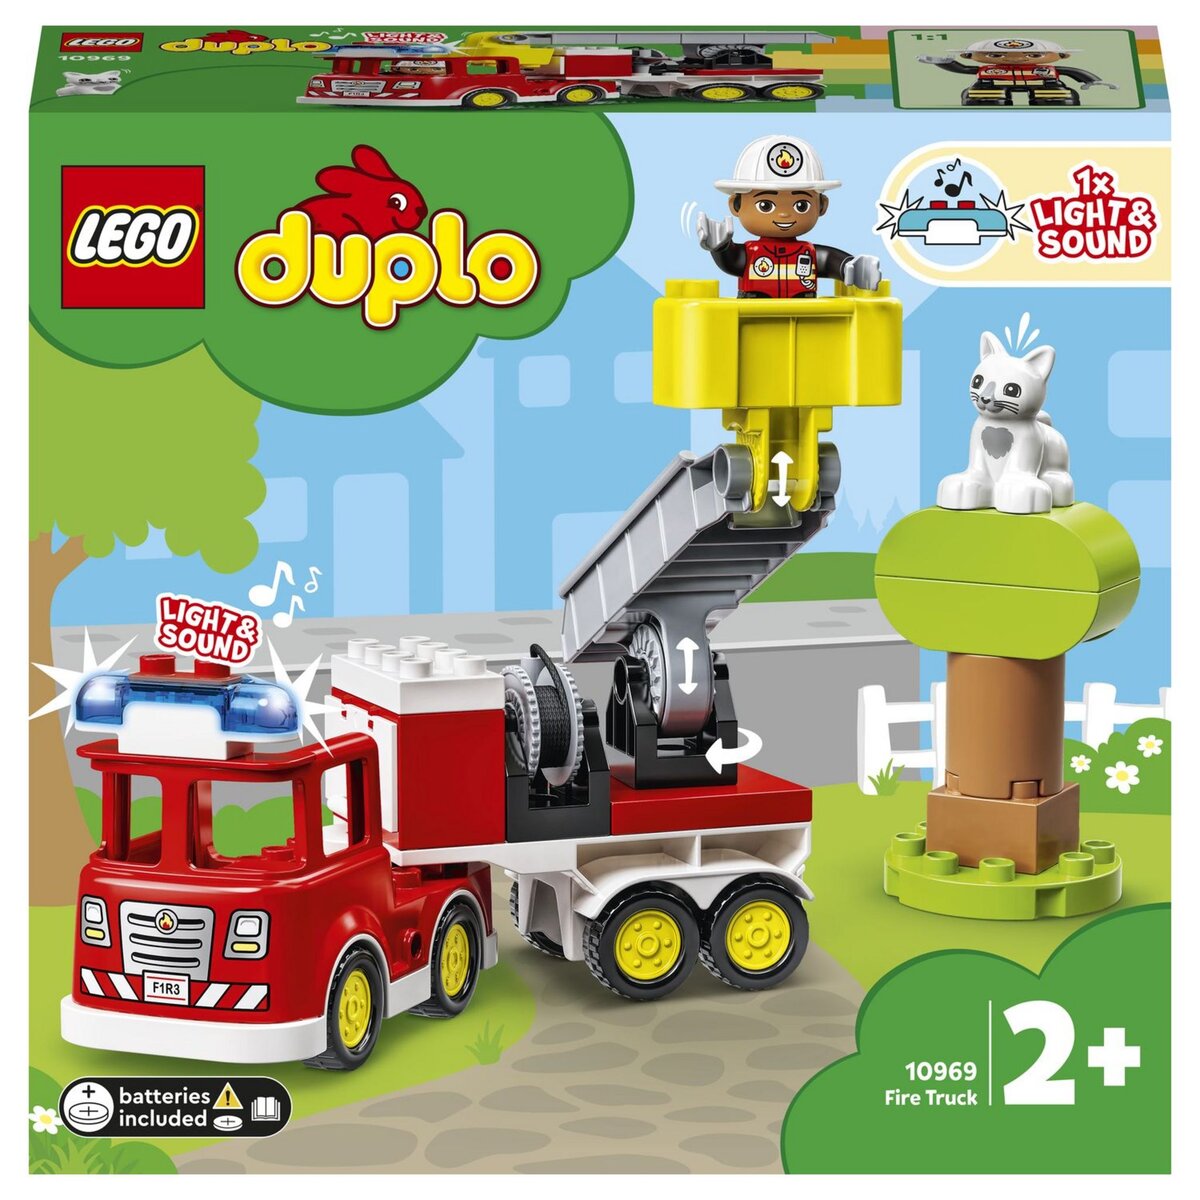 Lego 10901 duplo town le camion de pompiers jouet pour enfants 2 - 5 ans  avec son lumiere et figurine de pompier - La Poste